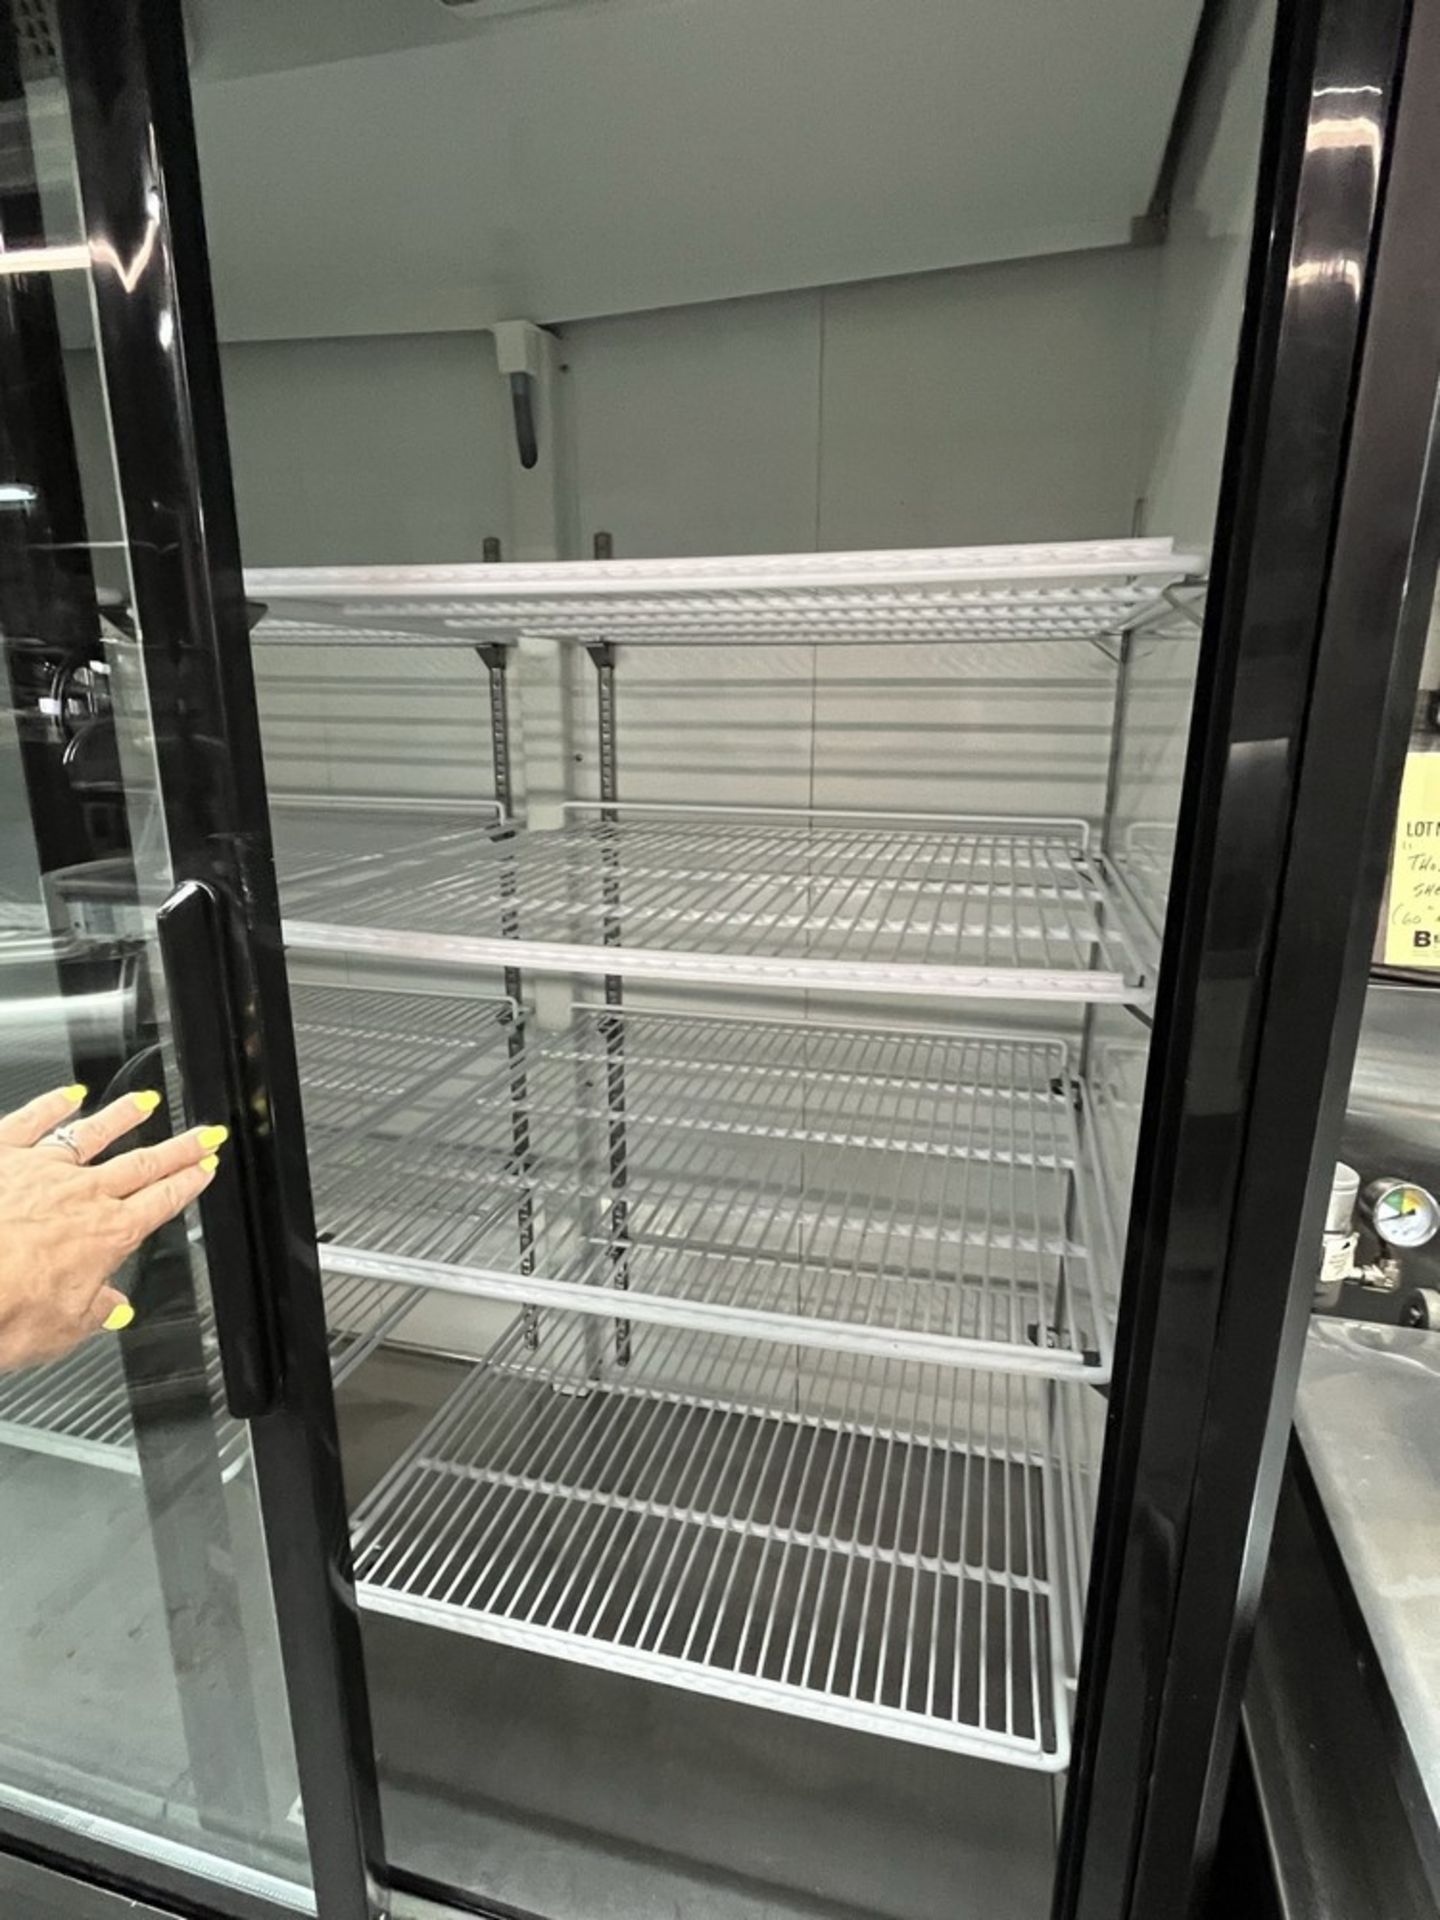 Réfrigérateur DANAIR, 2-portes vitrés coulissantes, mod: NRG-2GDC-53 HC - Image 4 of 4